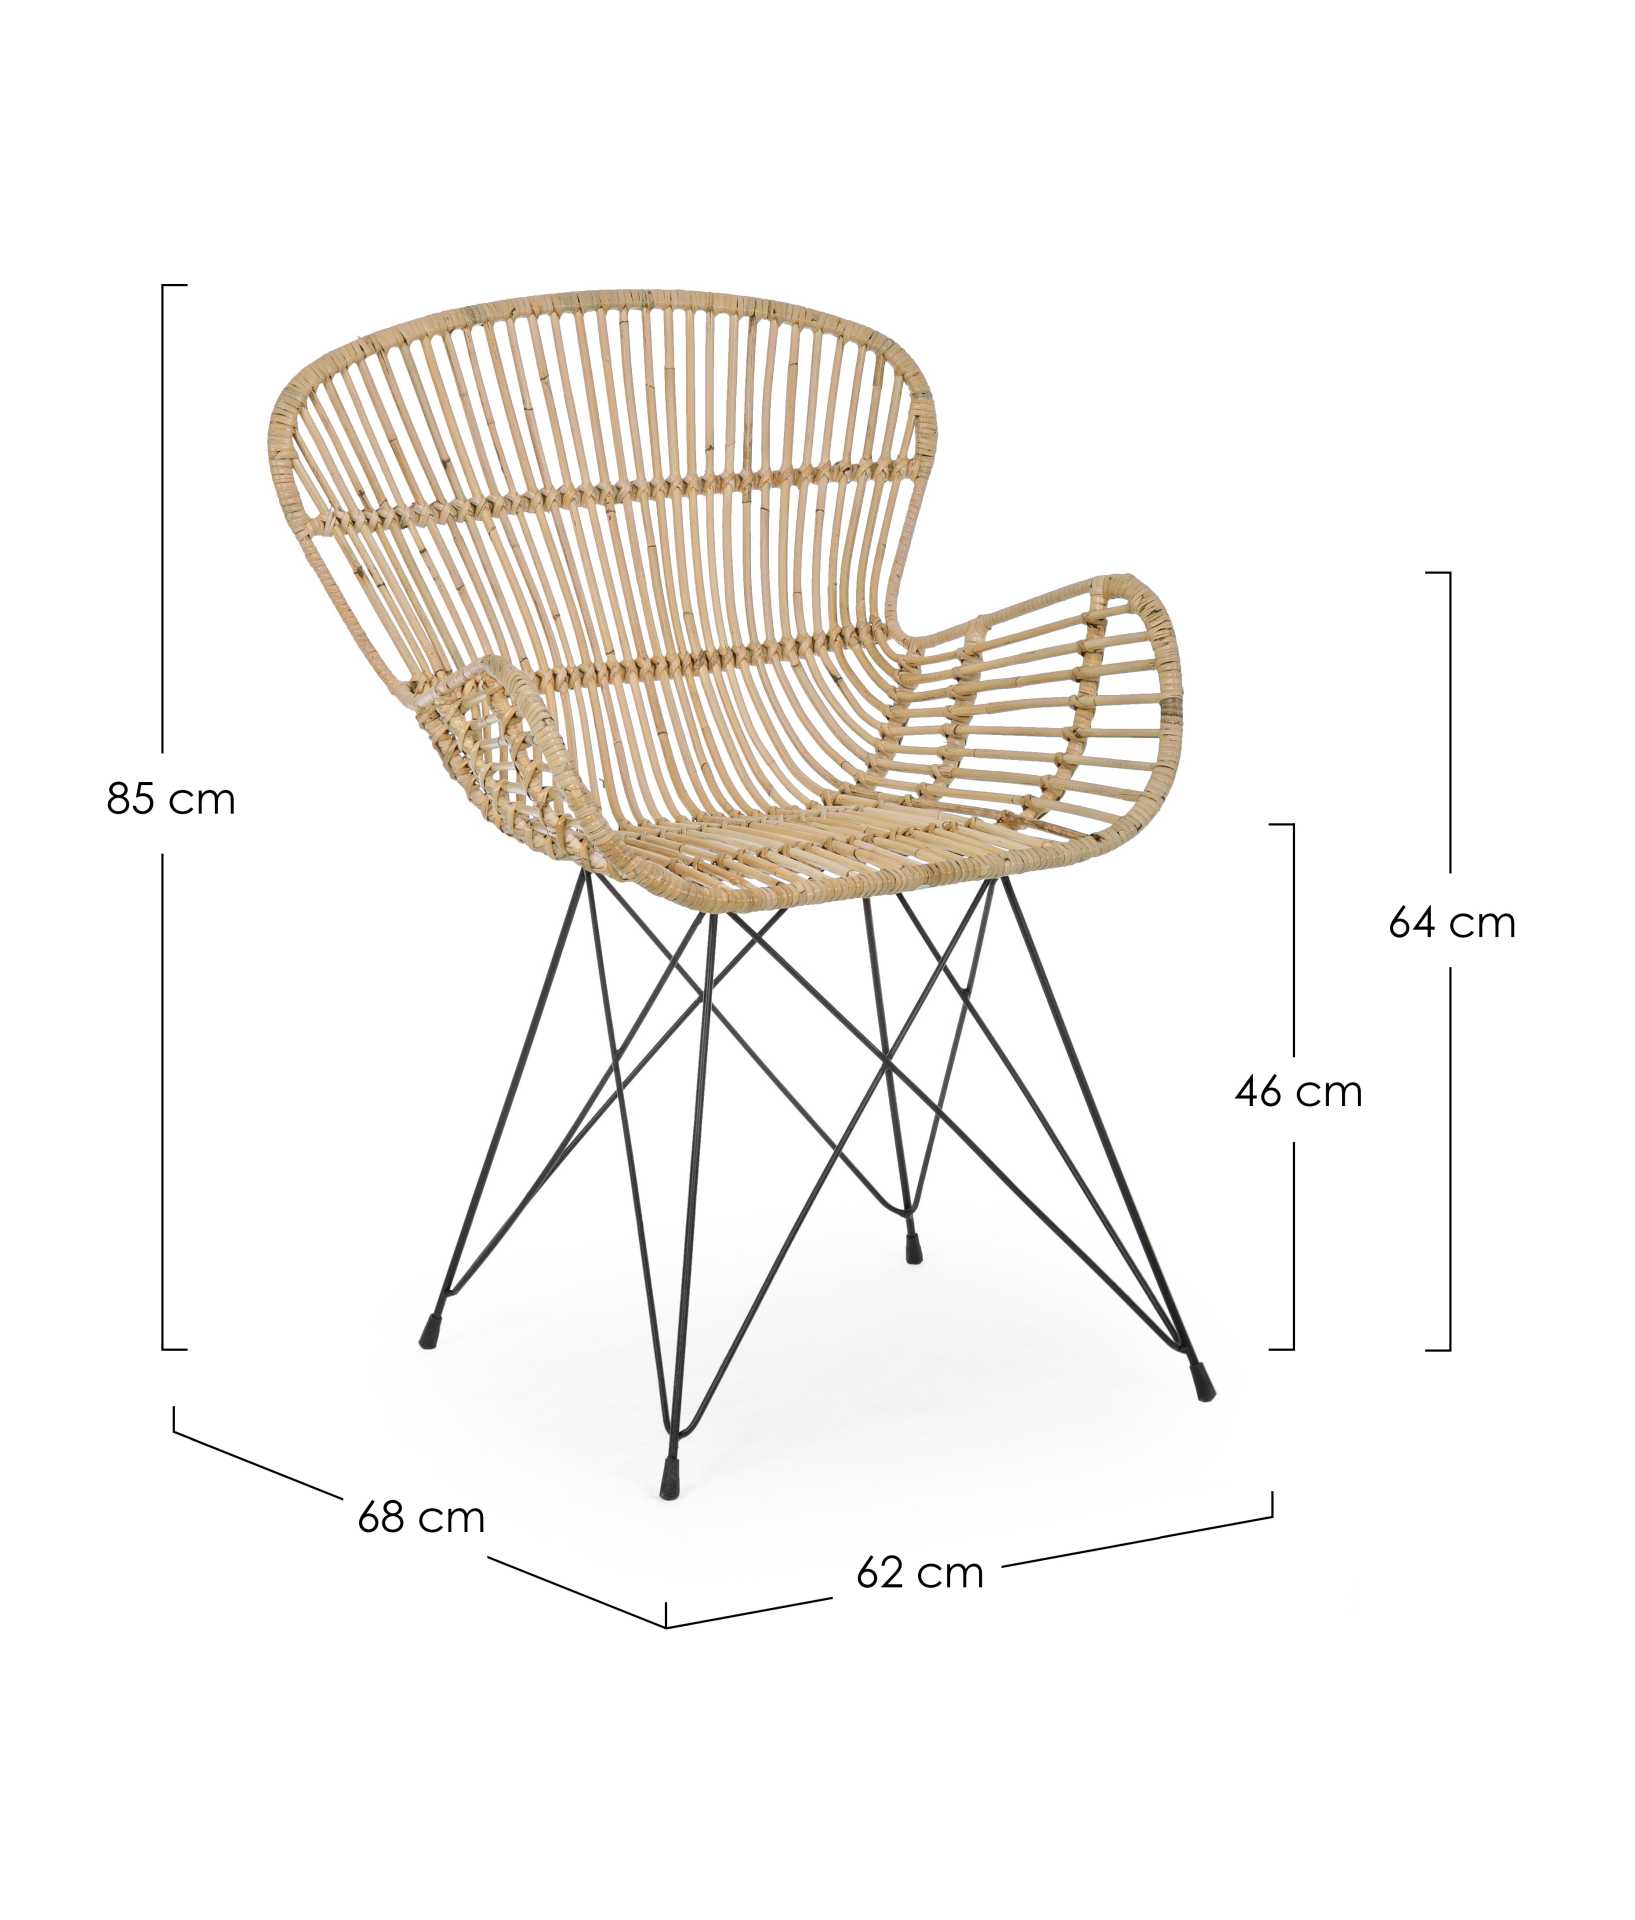 Der Sessel Venturs überzeugt mit seinem klassischen Design. Gefertigt wurde er aus Rattan, welches einen natürlichen Farbton besitzt. Das Gestell ist aus Metall und hat eine schwarze Farbe. Der Sessel besitzt eine Sitzhöhe von 46 cm. Die Breite beträgt 62